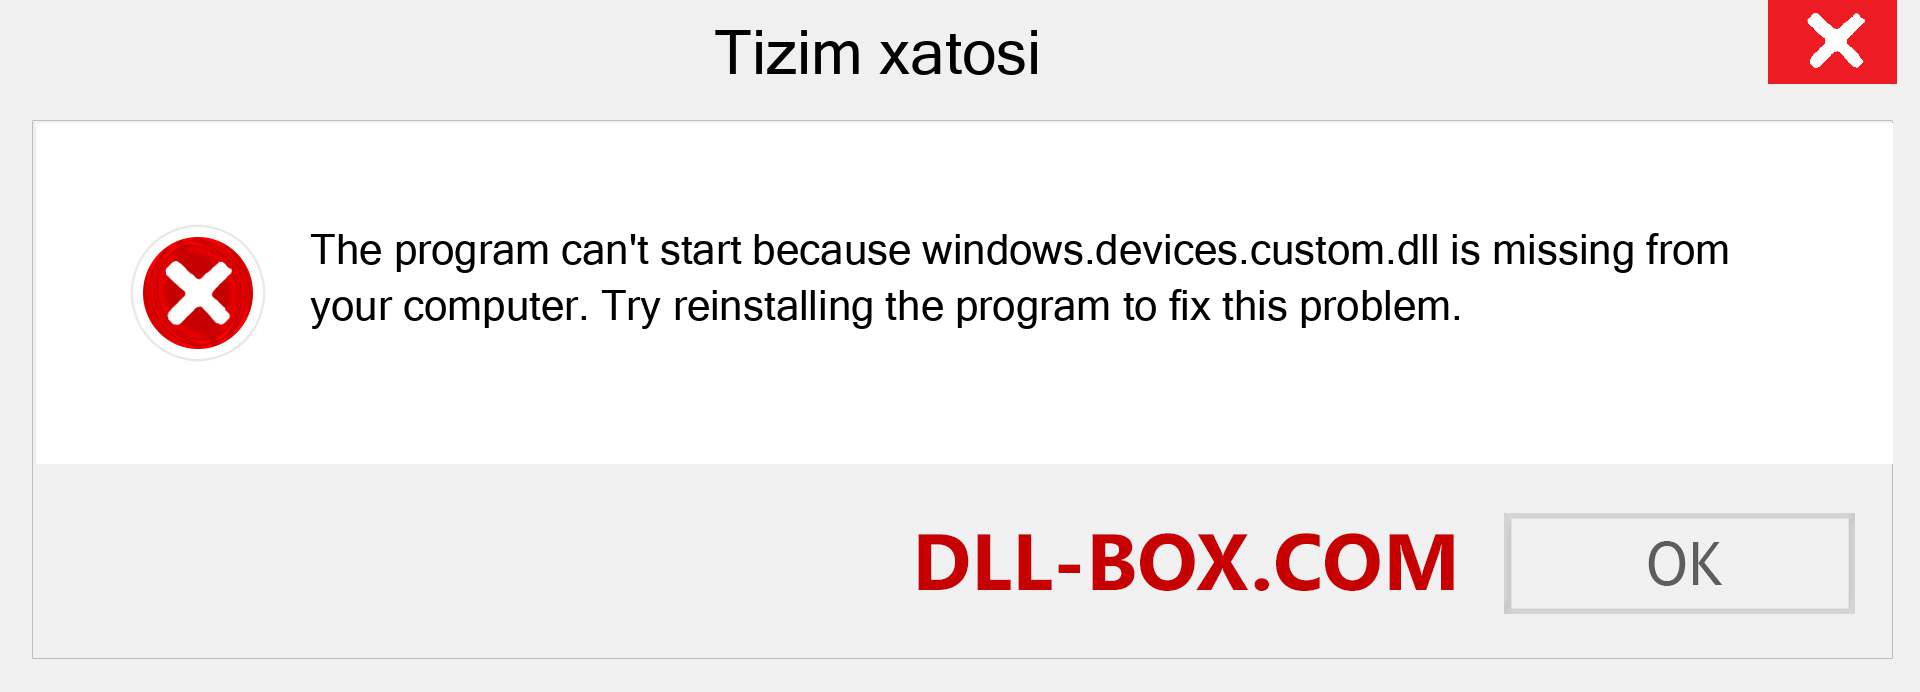 windows.devices.custom.dll fayli yo'qolganmi?. Windows 7, 8, 10 uchun yuklab olish - Windowsda windows.devices.custom dll etishmayotgan xatoni tuzating, rasmlar, rasmlar